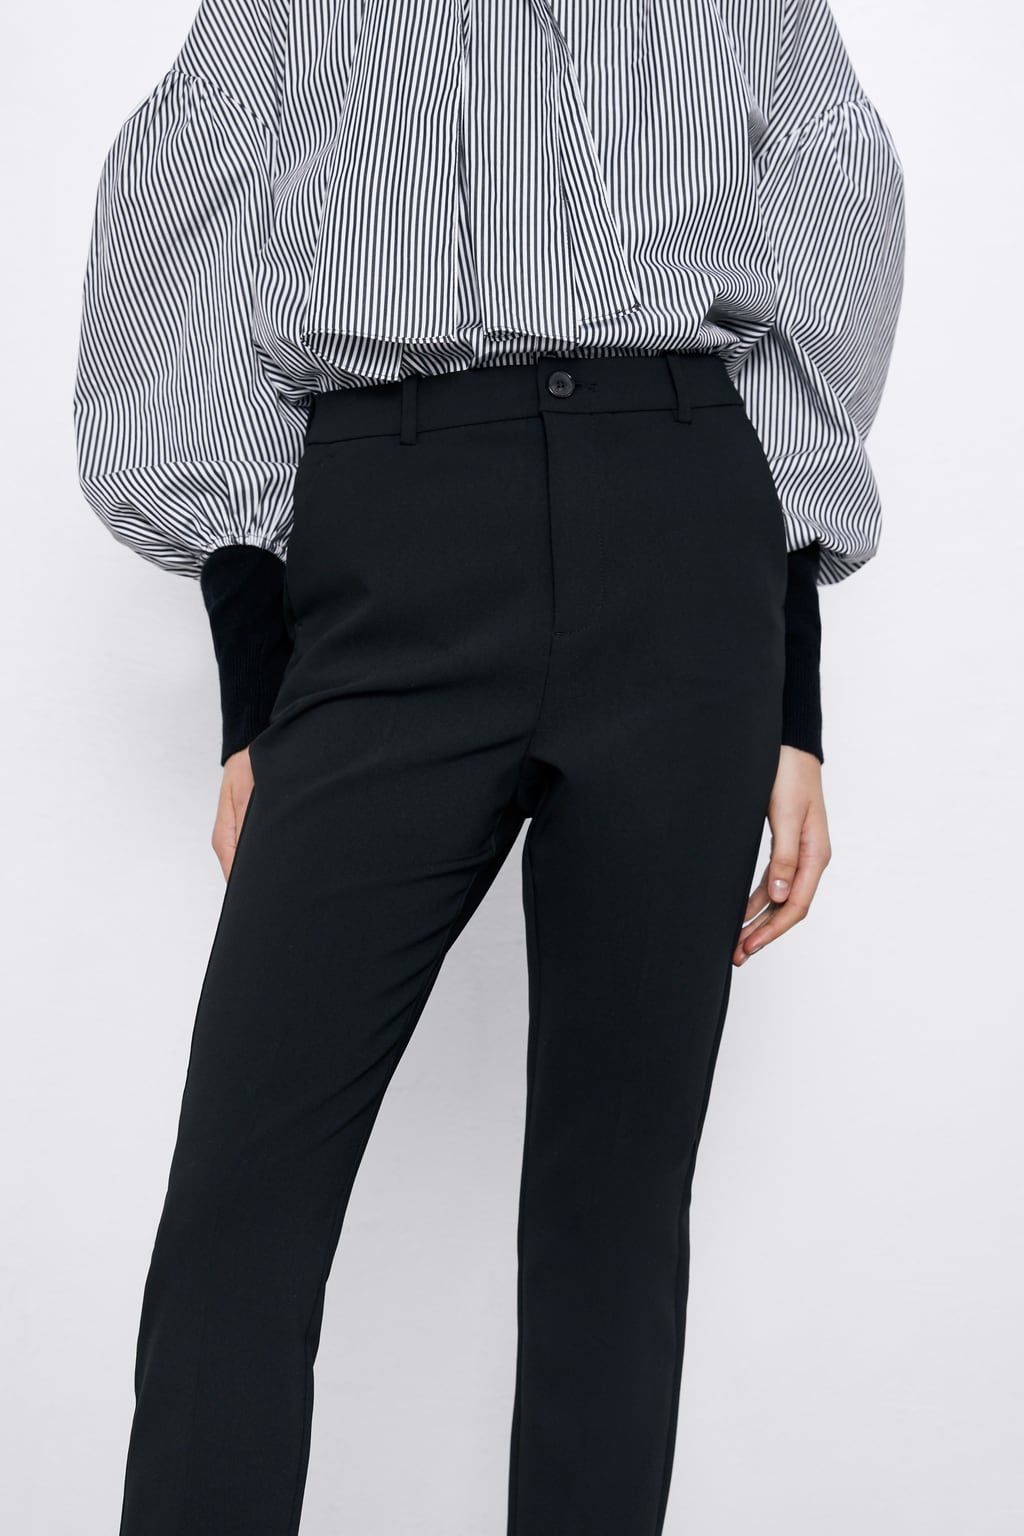 Muscular cuerda traje En Zara crean el pantalón de vestir negro que reduce una talla